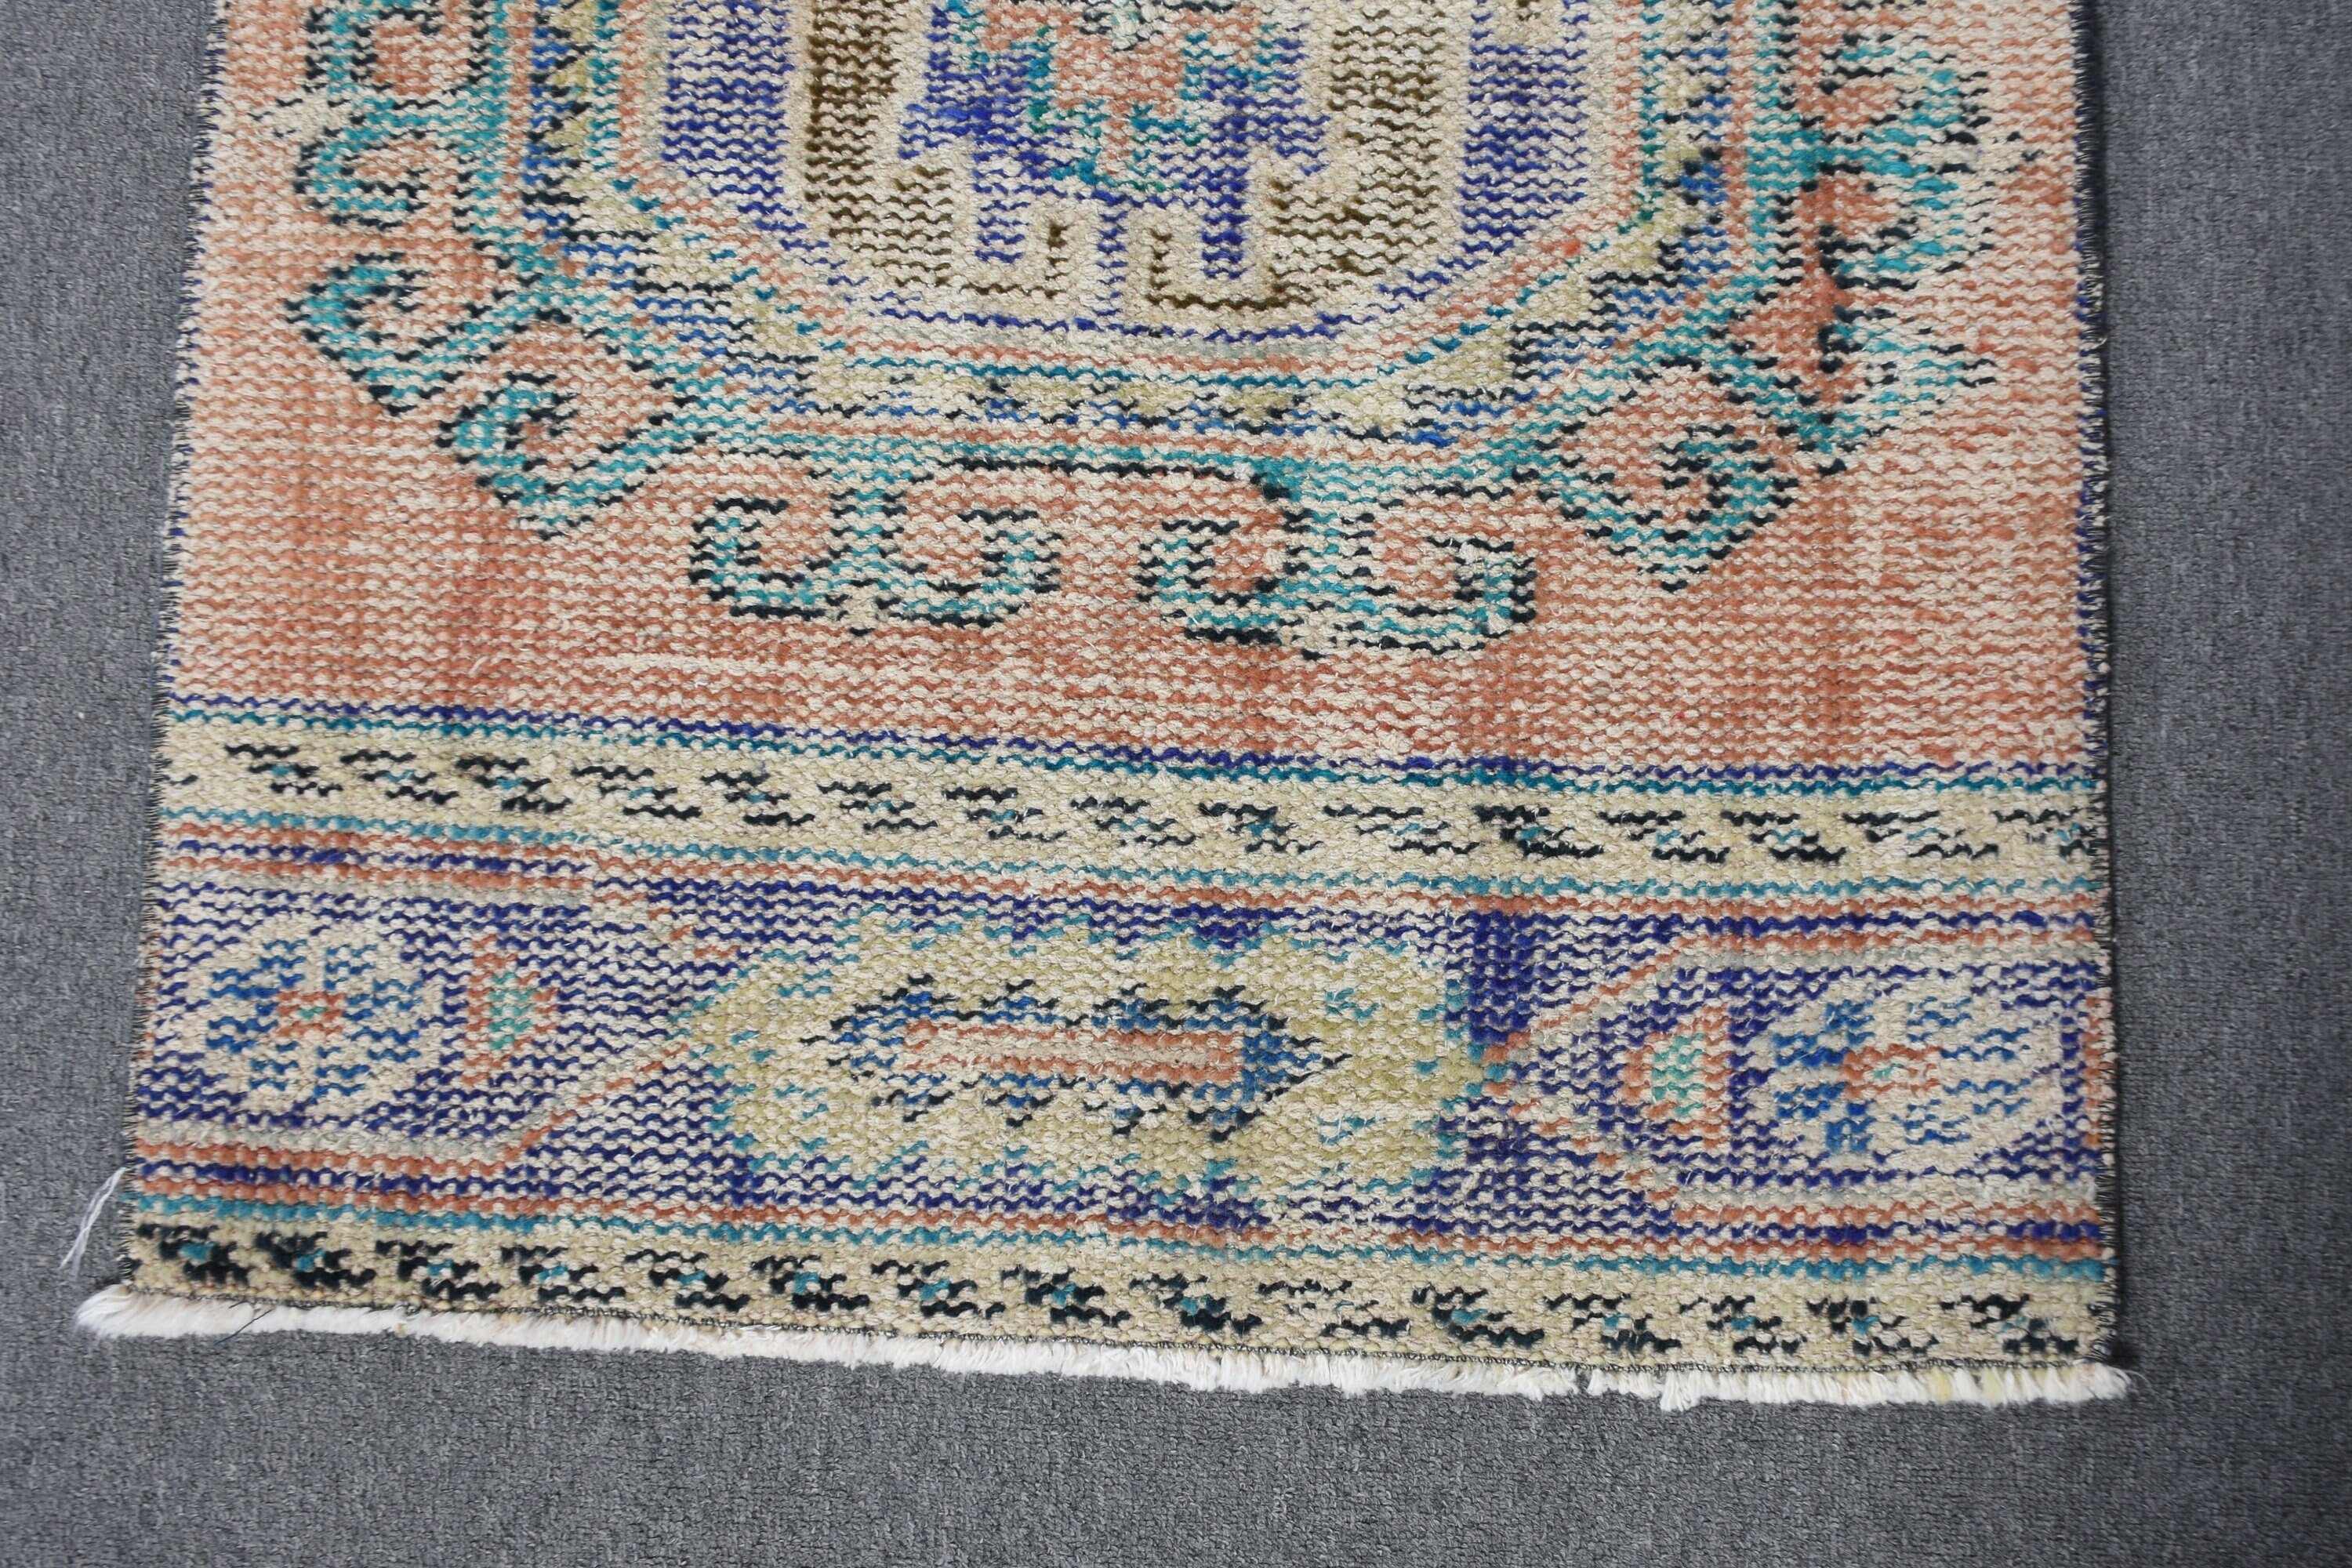 Turkish Rug, Rugs for Corridor, Antique Rugs, Boho Rug, Vintage Rugs, Blue Antique Rug, Moroccan Rugs, Hallway Rugs, 2.2x11 ft Runner Rug